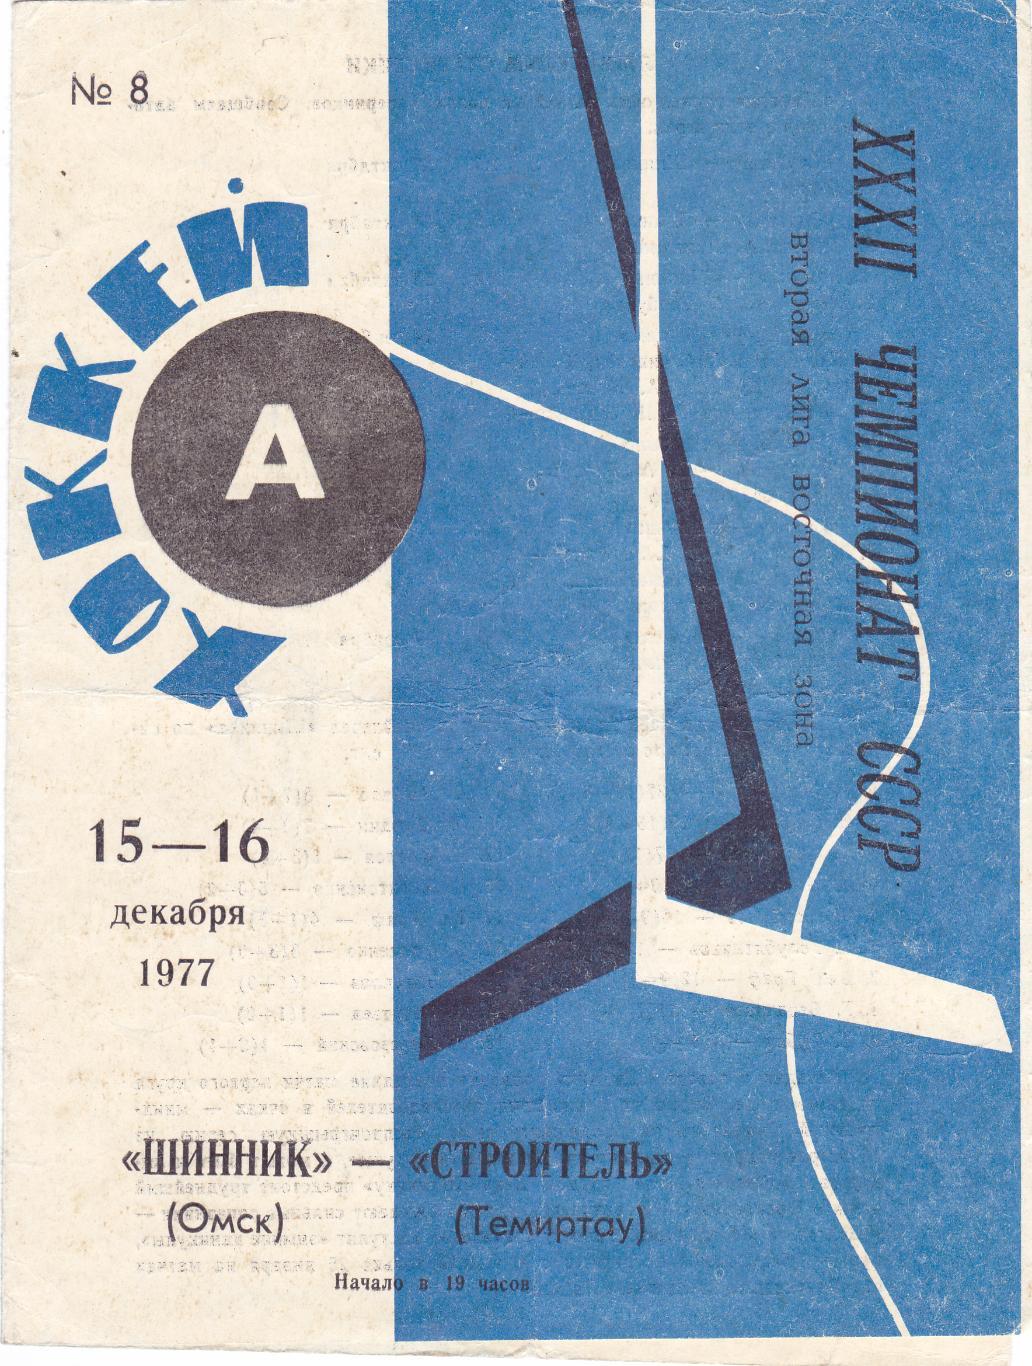 Шинник (Омск) - Строитель (Темиртау) 15-16.12.1977